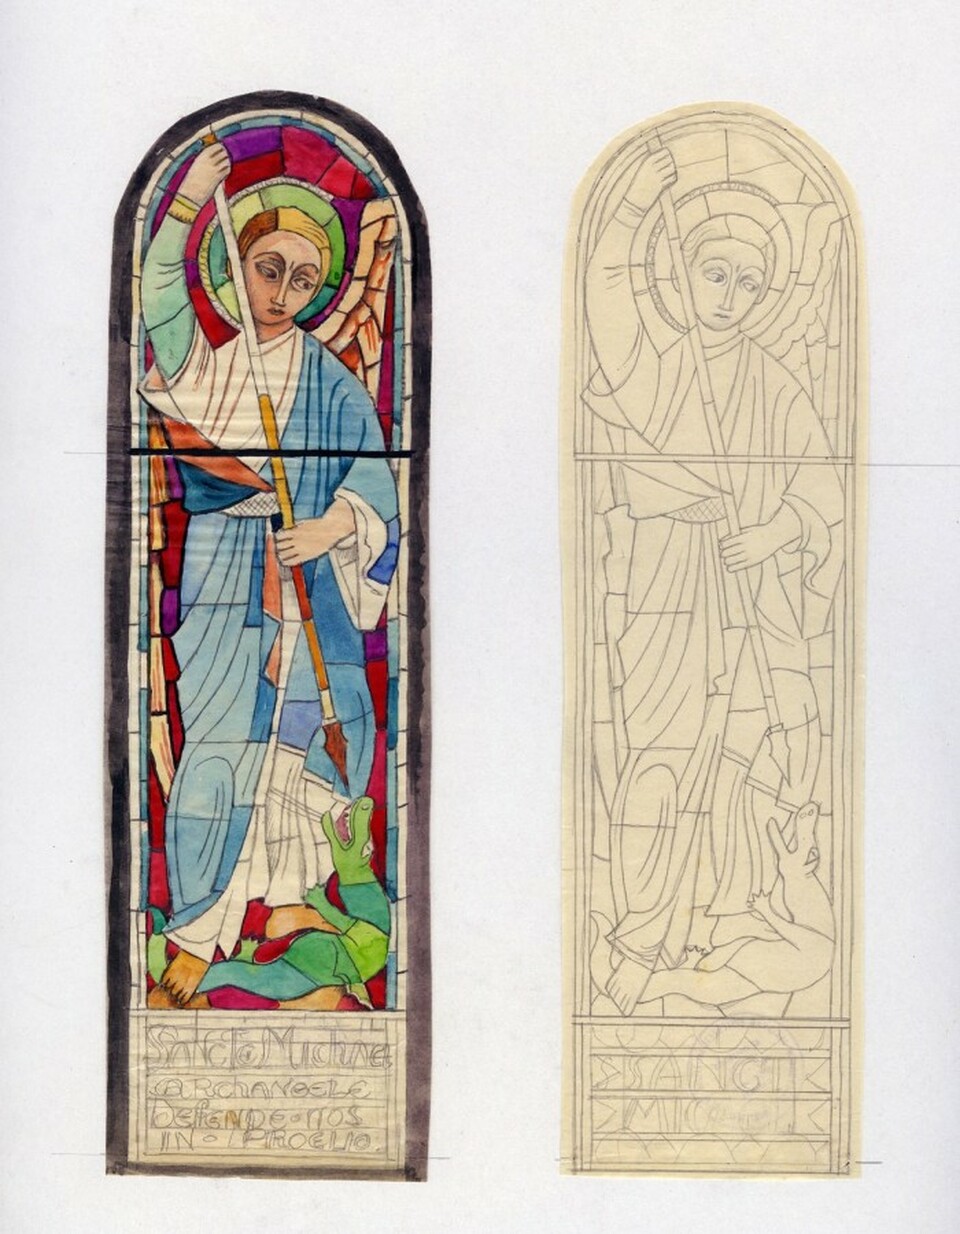 Szent Mihály arkangyalt ábrázoló ólomüveg ablak kartonja a MÉM MDK gyűjteményében. Forrás: memmdk.hu